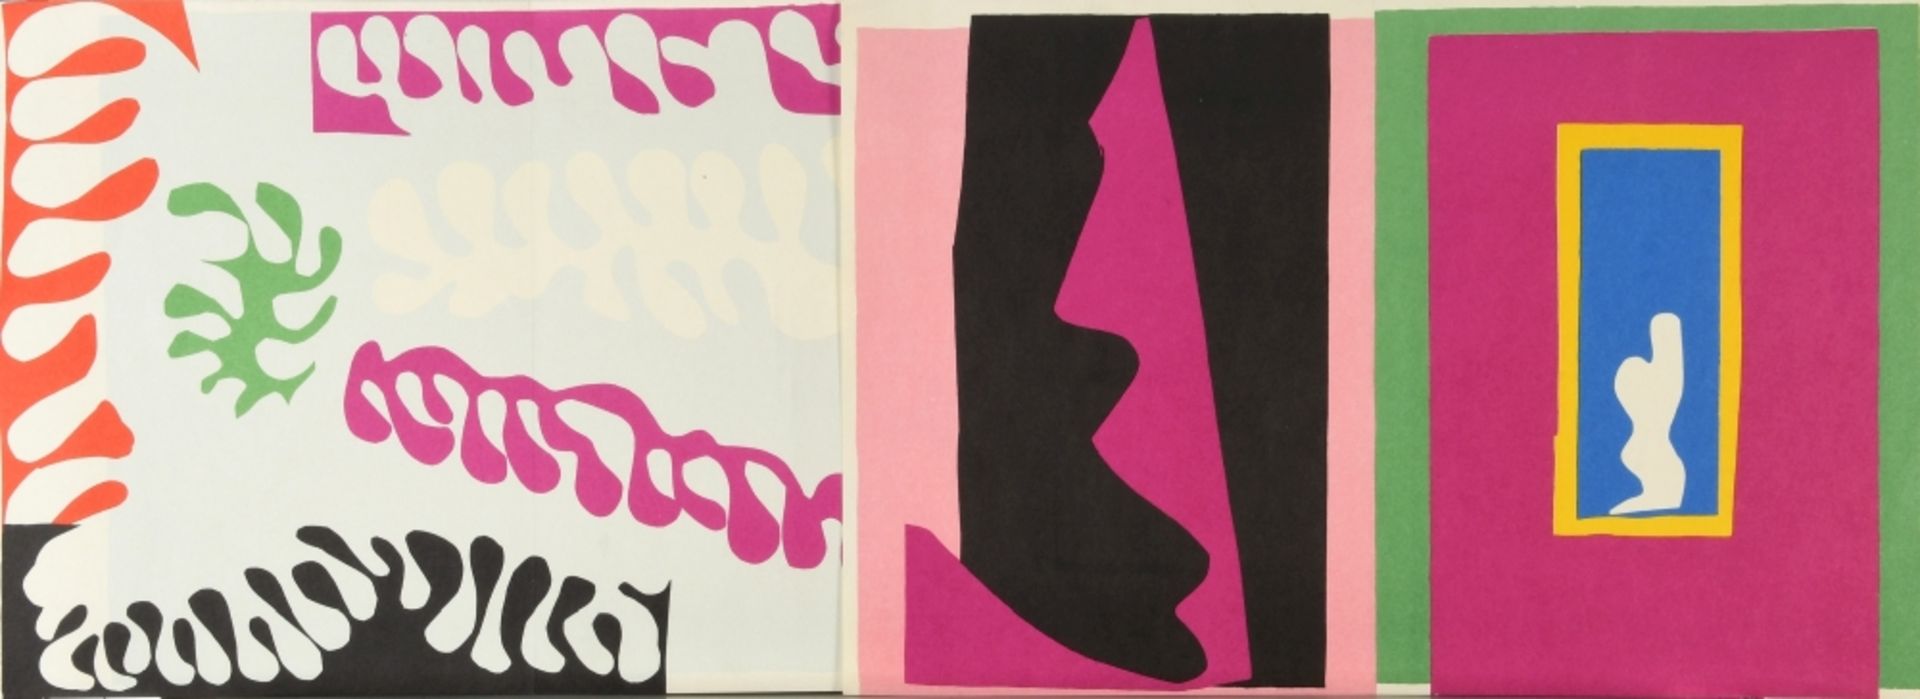 Matisse, Henri, 1869 Cateau/Cambresis - 1954 Nizza